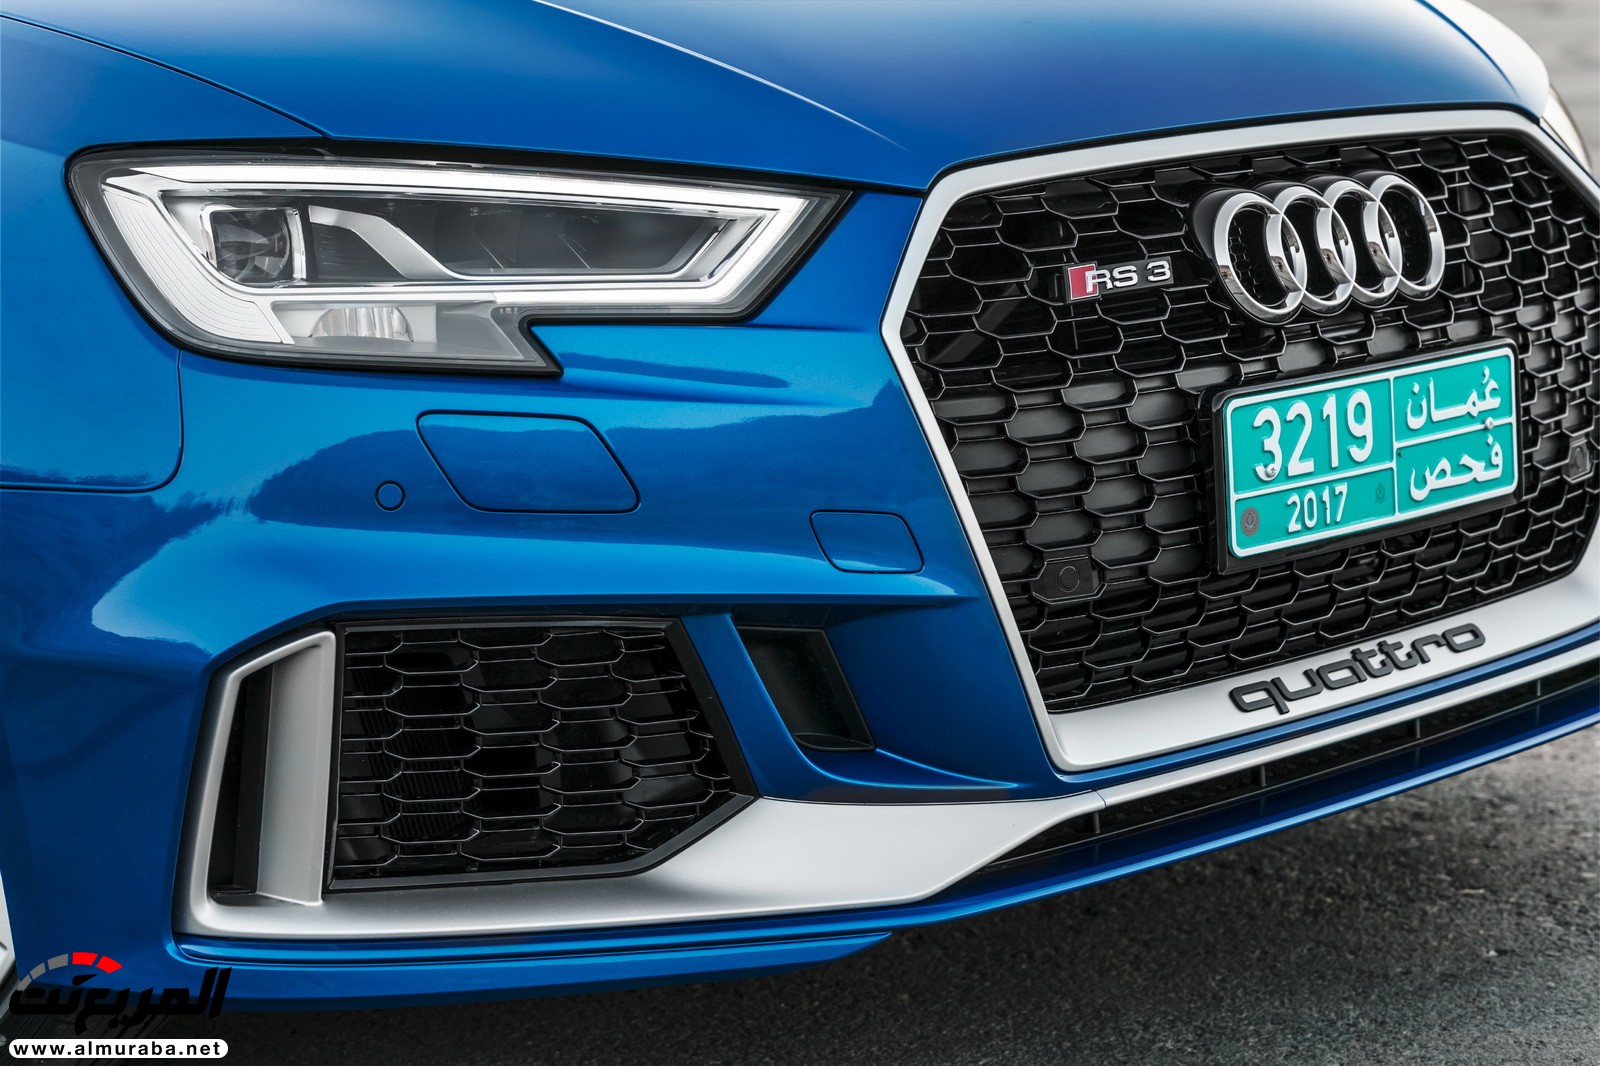 "أودي" تكشف عن RS3 الجديدة كليا 2018 بقوة 395 حصان Audi 69